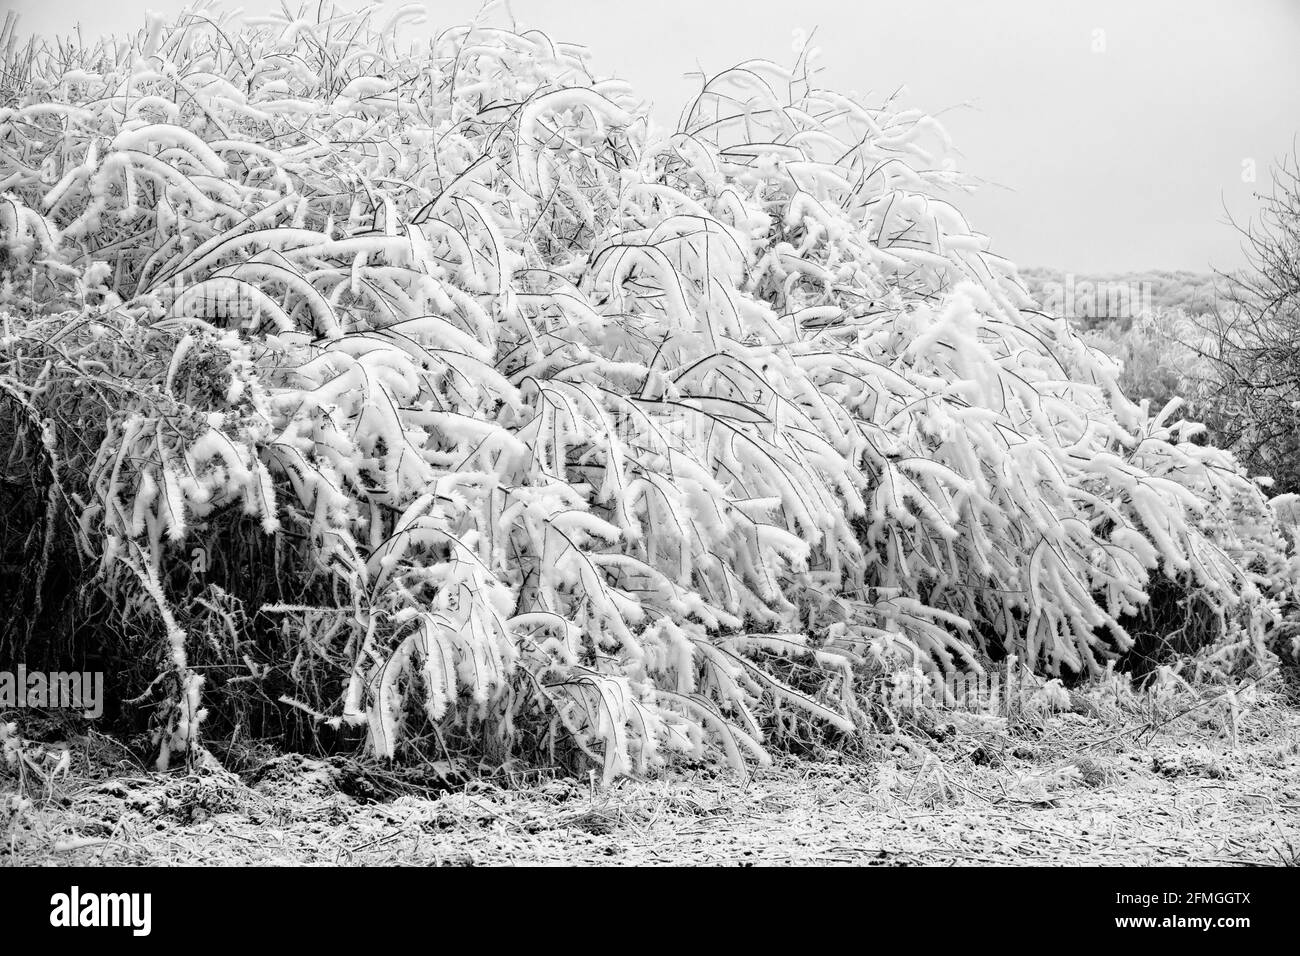 Weißer Frost (Reif) auf den Ästen des Baumes ist Exquisit in der Anmut der langen dünnen Kristalle - Teller-Kristall Frost Stockfoto